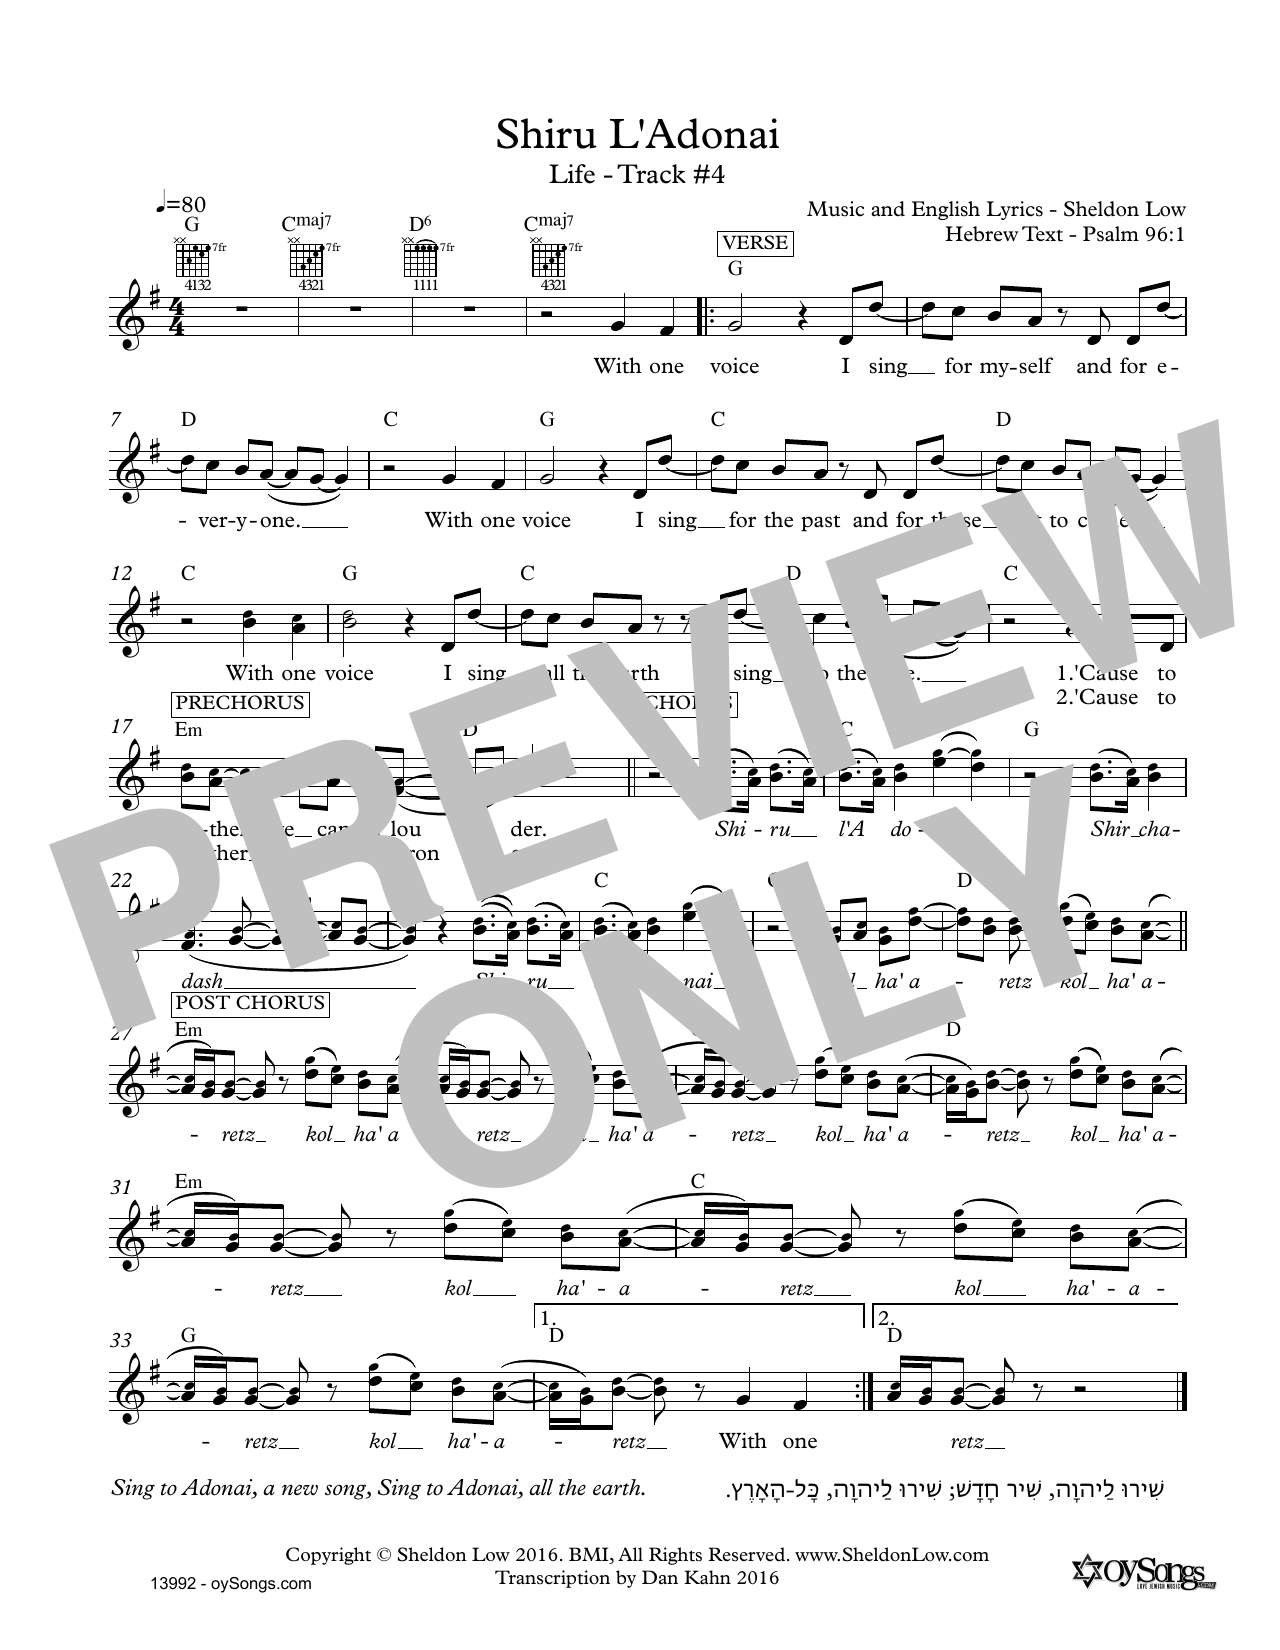 Sheldon Low Shiru L'adonai Sheet Music Notes & Chords for Lead Sheet / Fake Book - Download or Print PDF